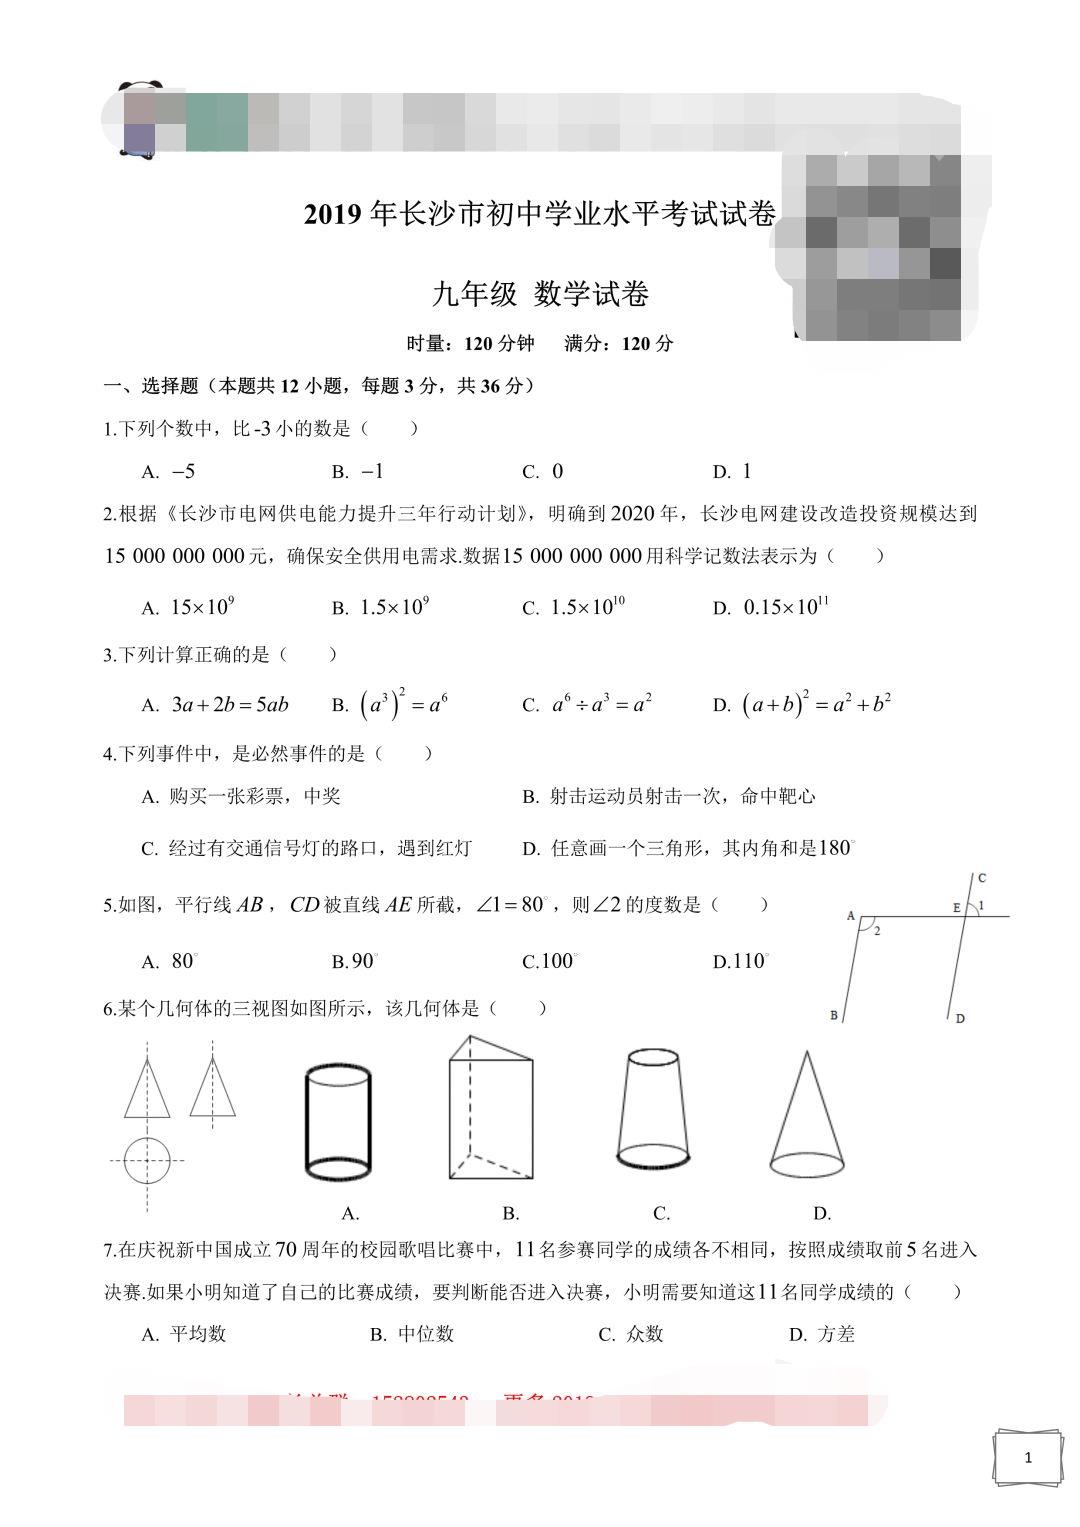 2019年湖南长沙中考数学真题及答案【图片版】.jpg